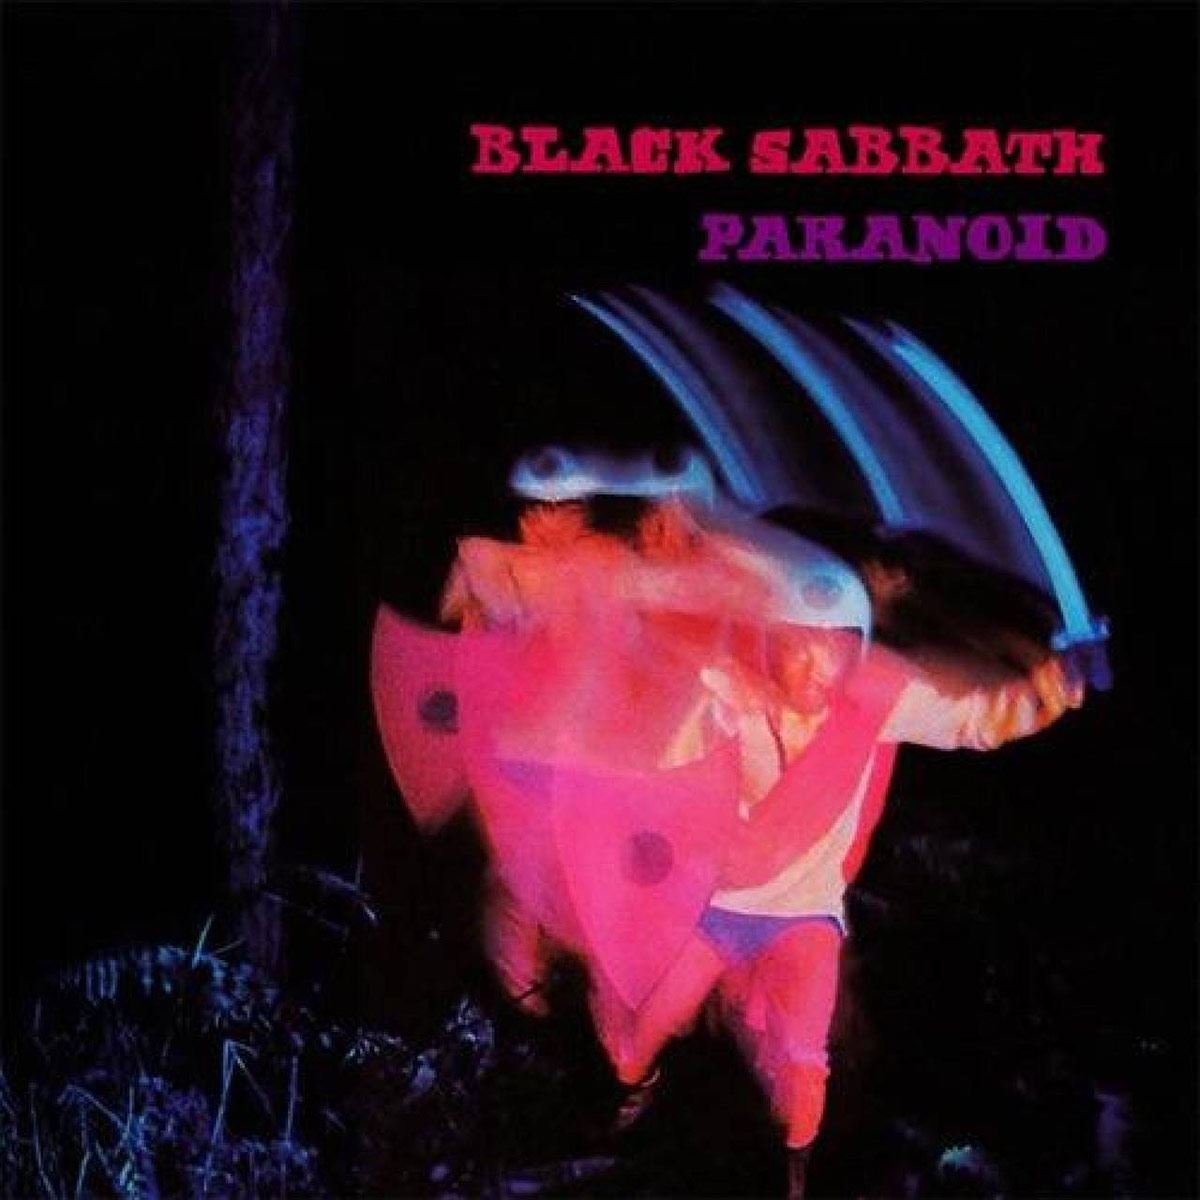 black sabbath paranoid album